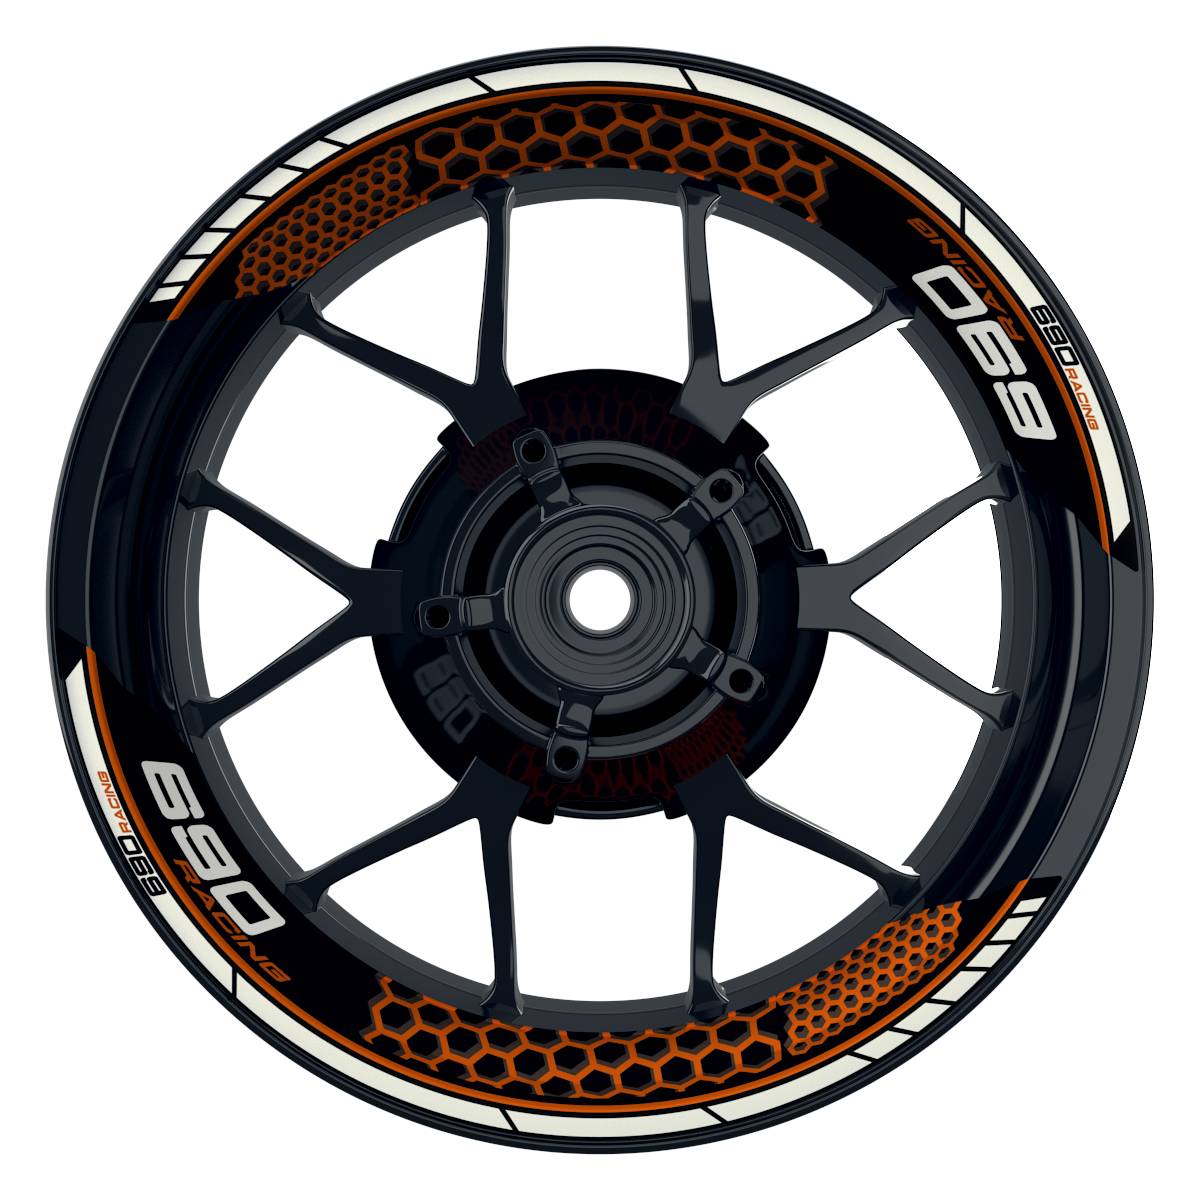 KTM Racing 690 Hexagon schwarz orange Frontansicht